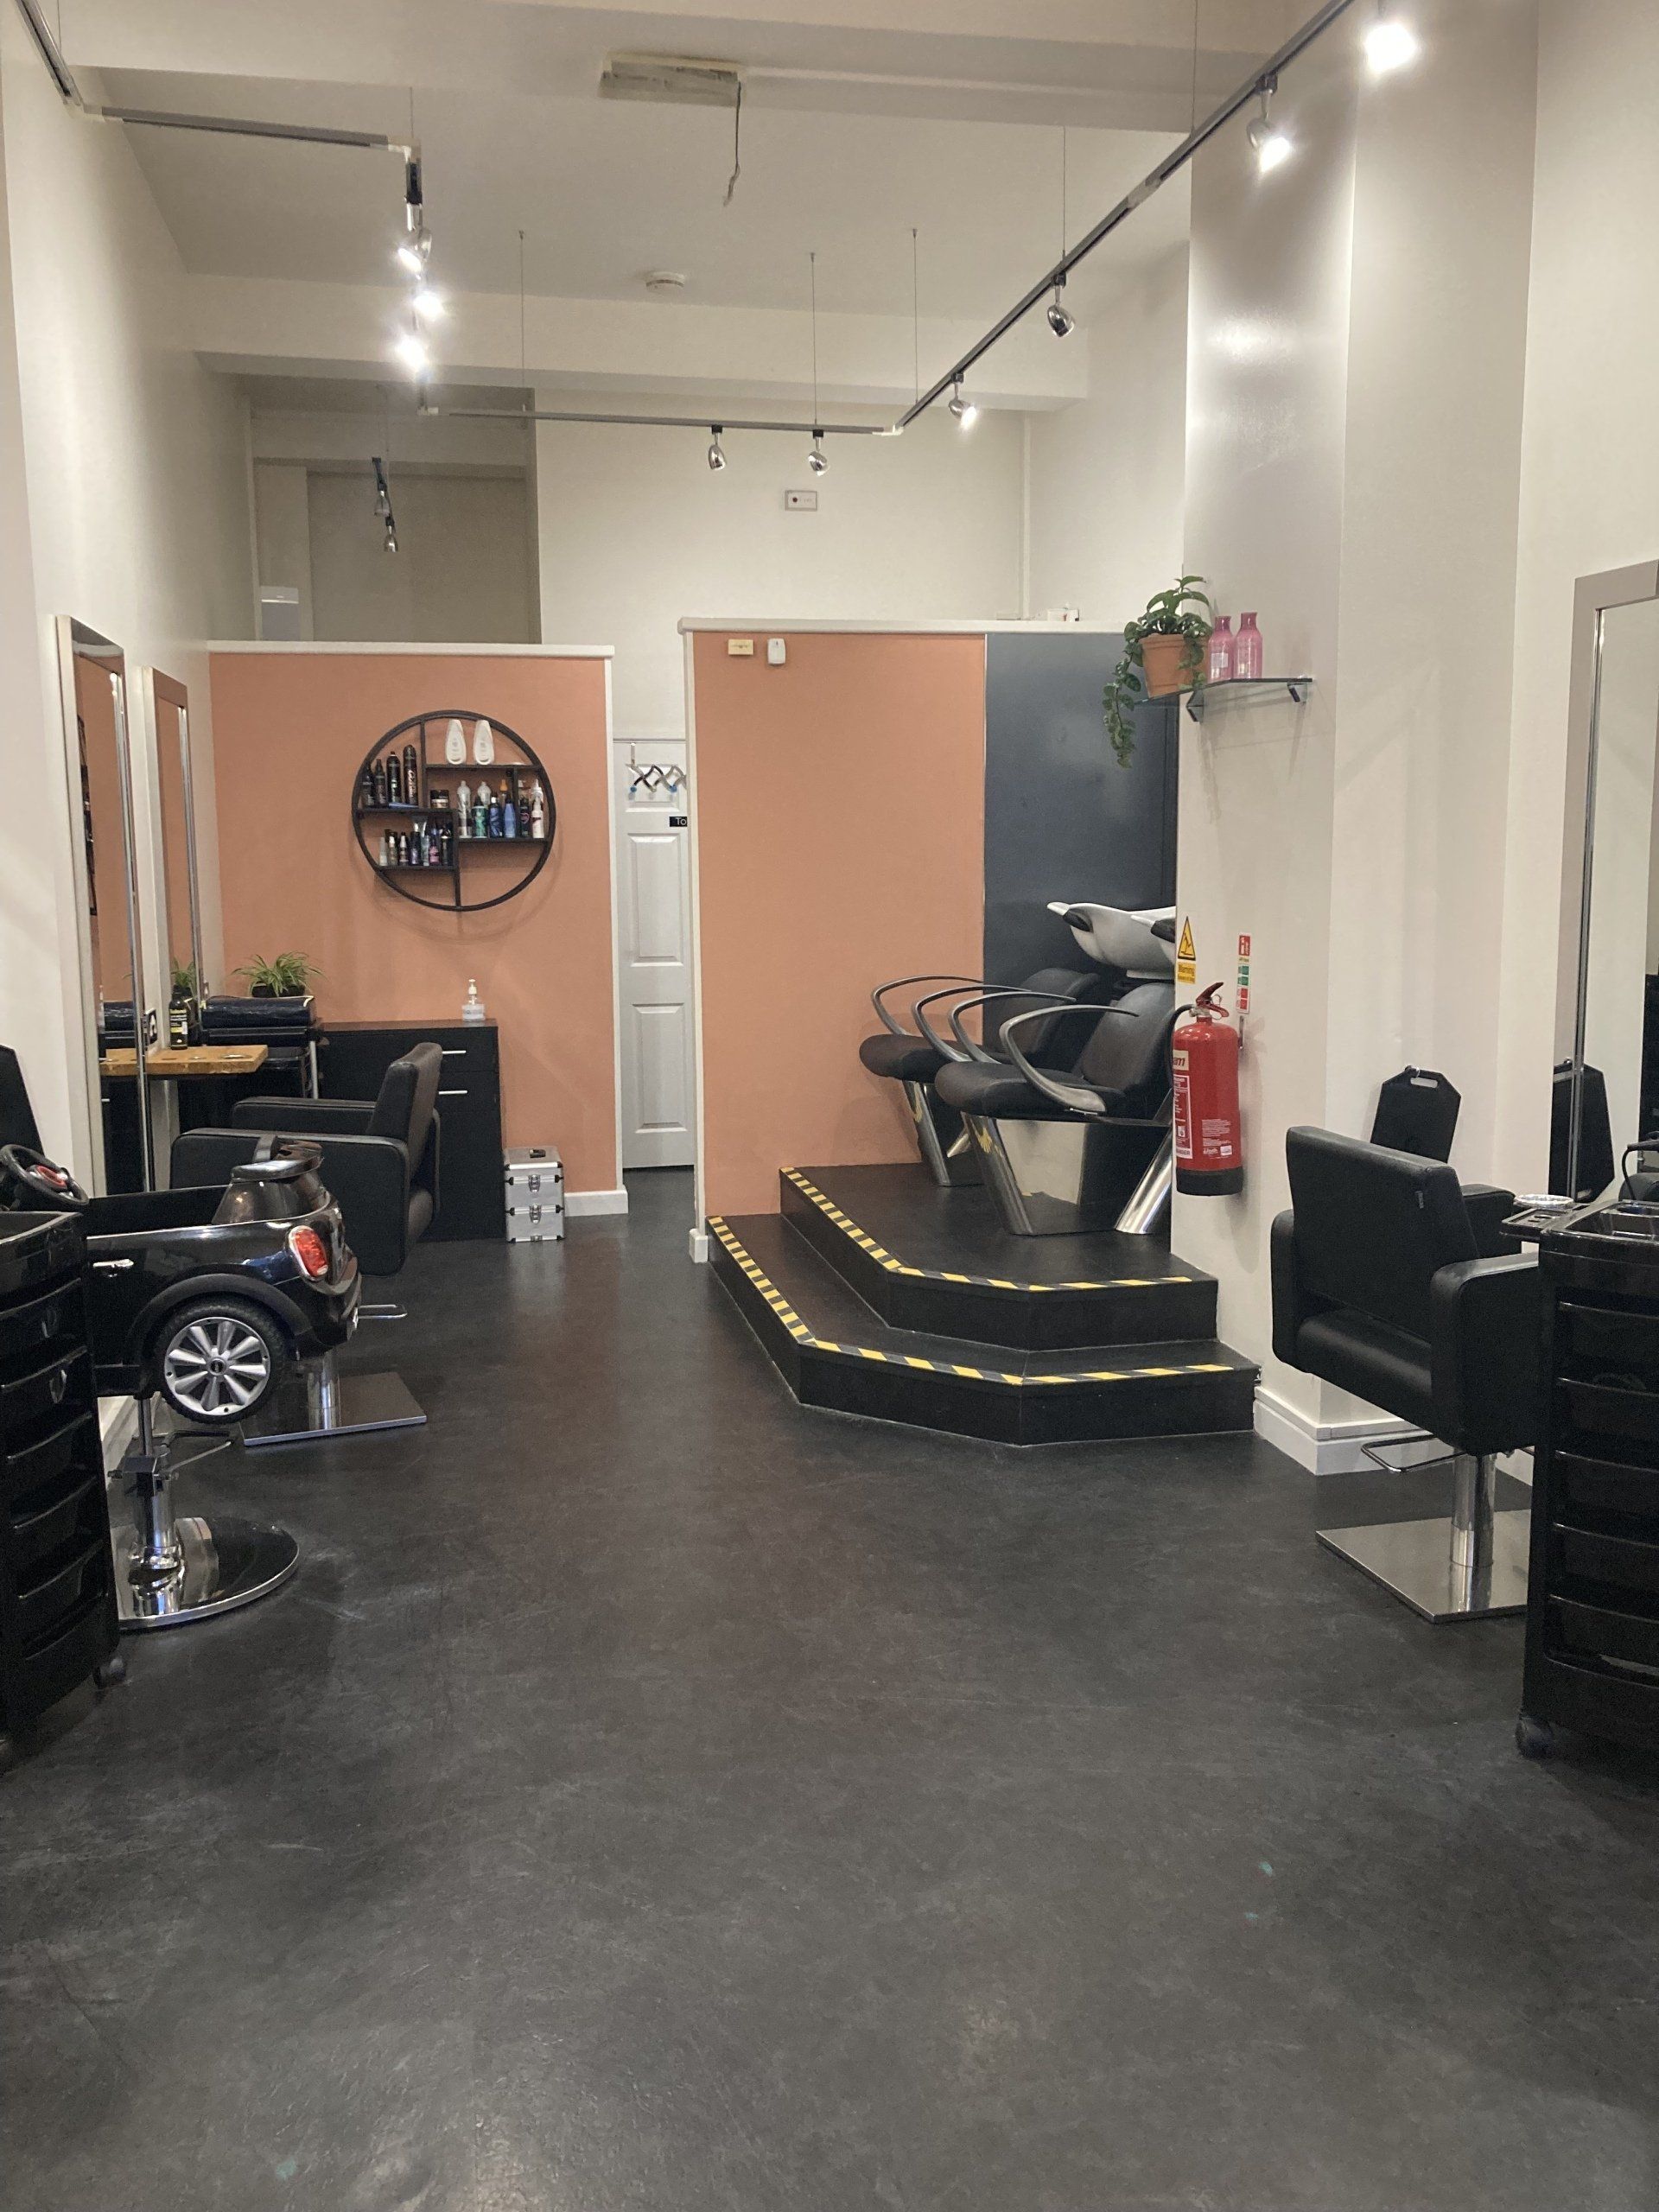 Cutabove hair salon in Saltash